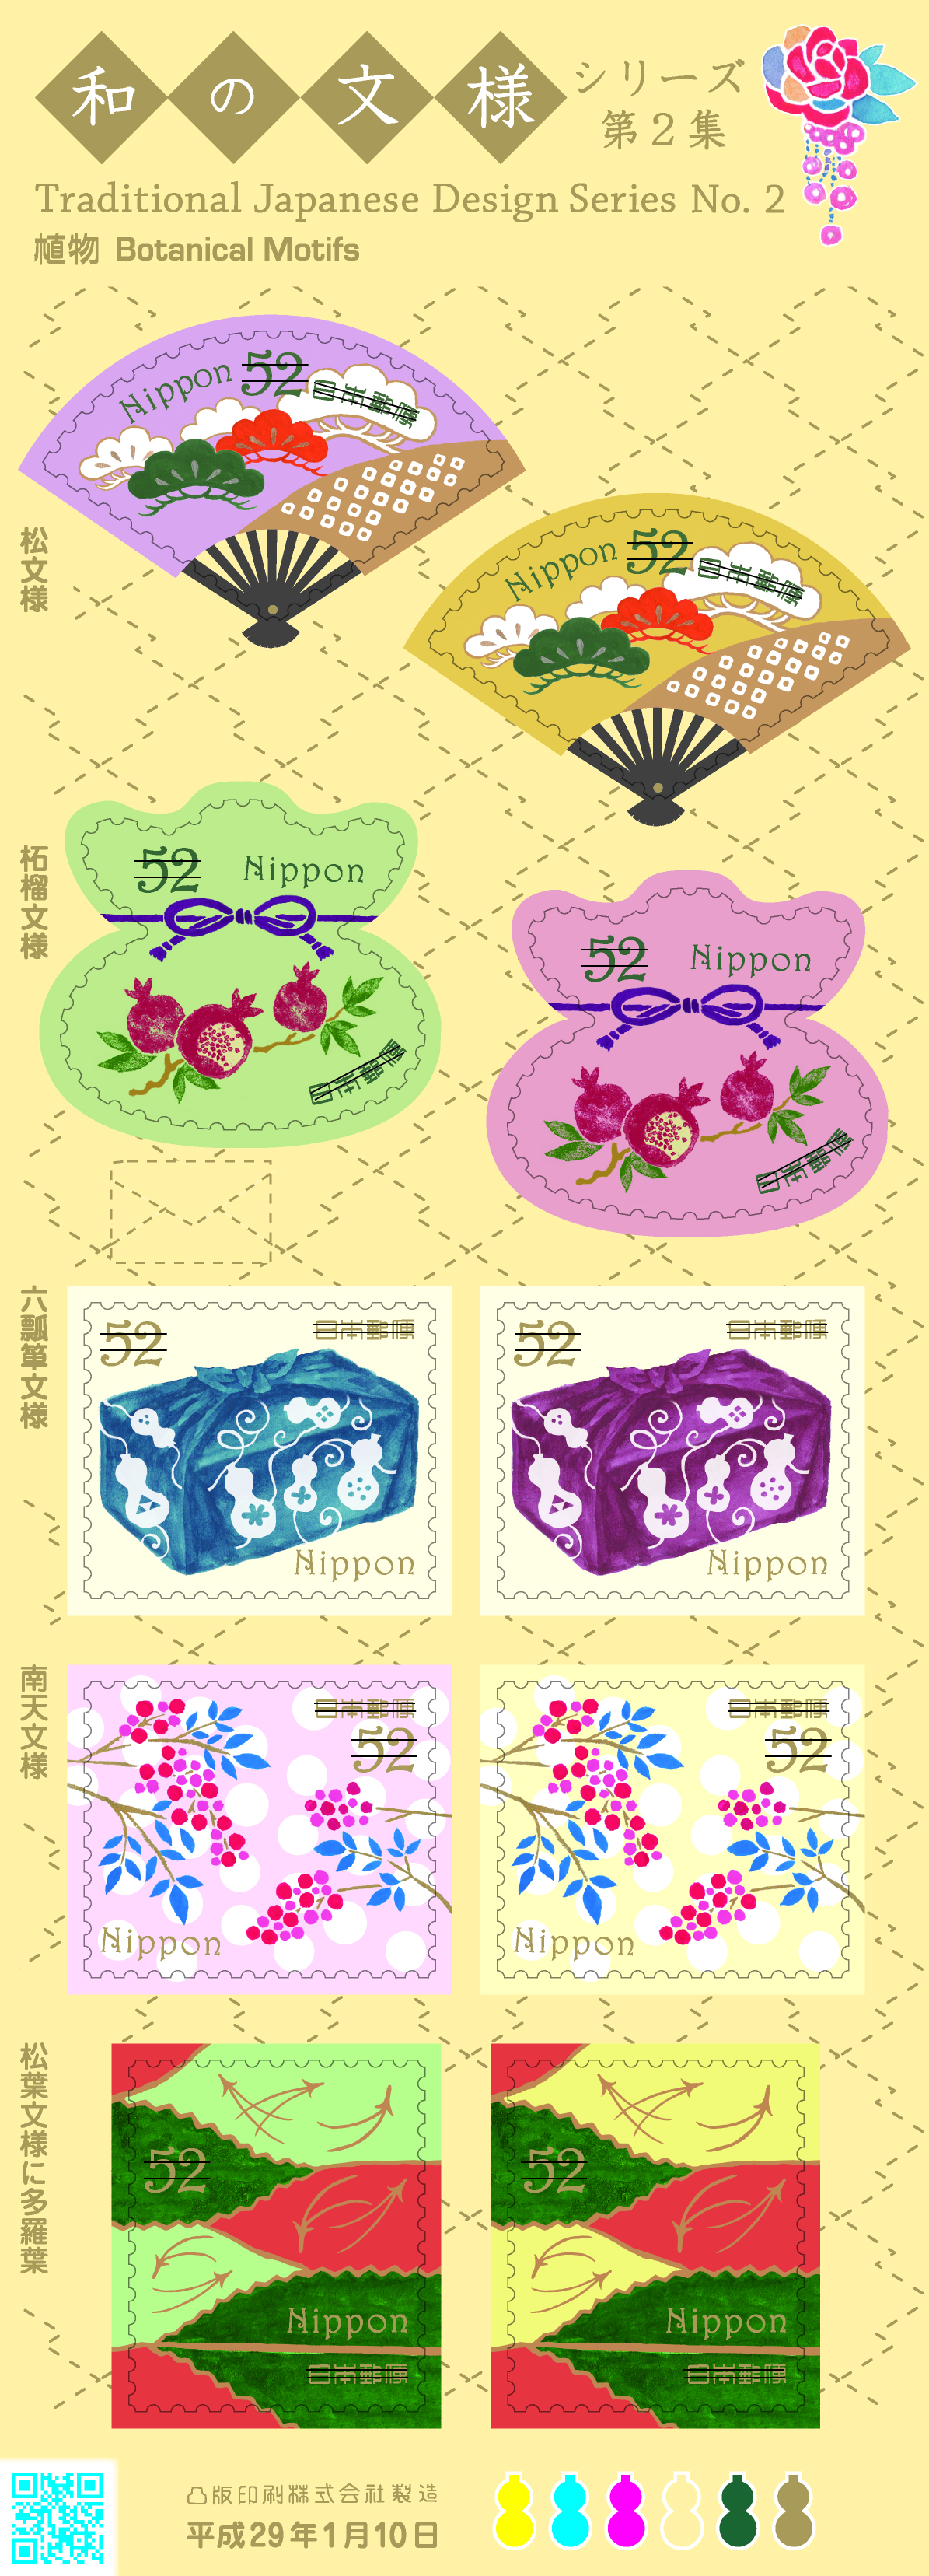 特殊切手「和の文様シリーズ 第2集」の発行 - 日本郵便